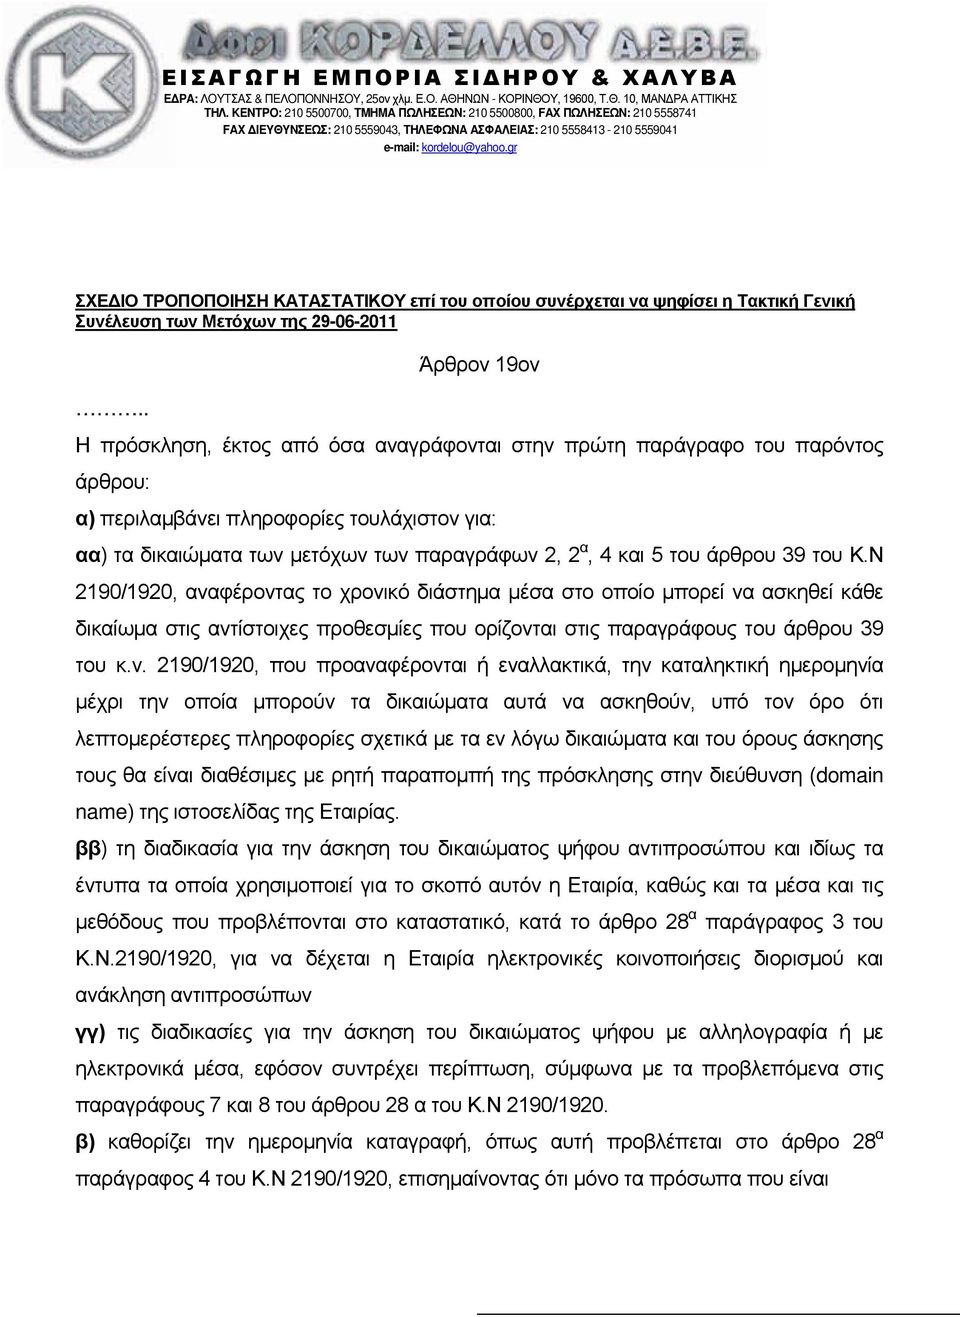 gr ΣΧΕΔΙΟ ΤΡΟΠΟΠΟΙΗΣΗ ΚΑΤΑΣΤΑΤΙΚΟΥ επί του οποίου συνέρχεται να ψηφίσει η Τακτική Γενική Συνέλευση των Μετόχων της 29-06-2011.